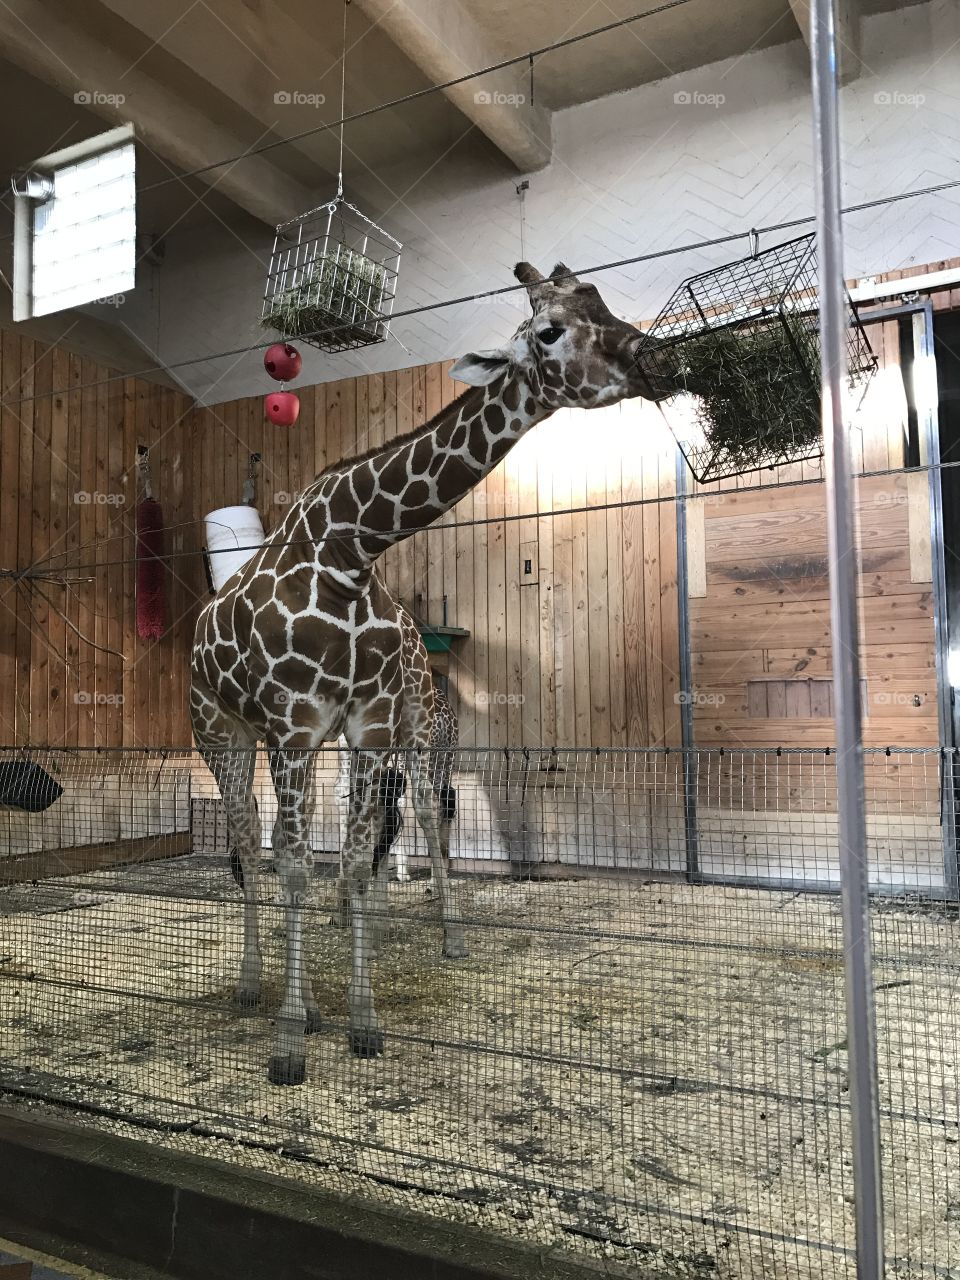 Giraffe enclosure habitat 